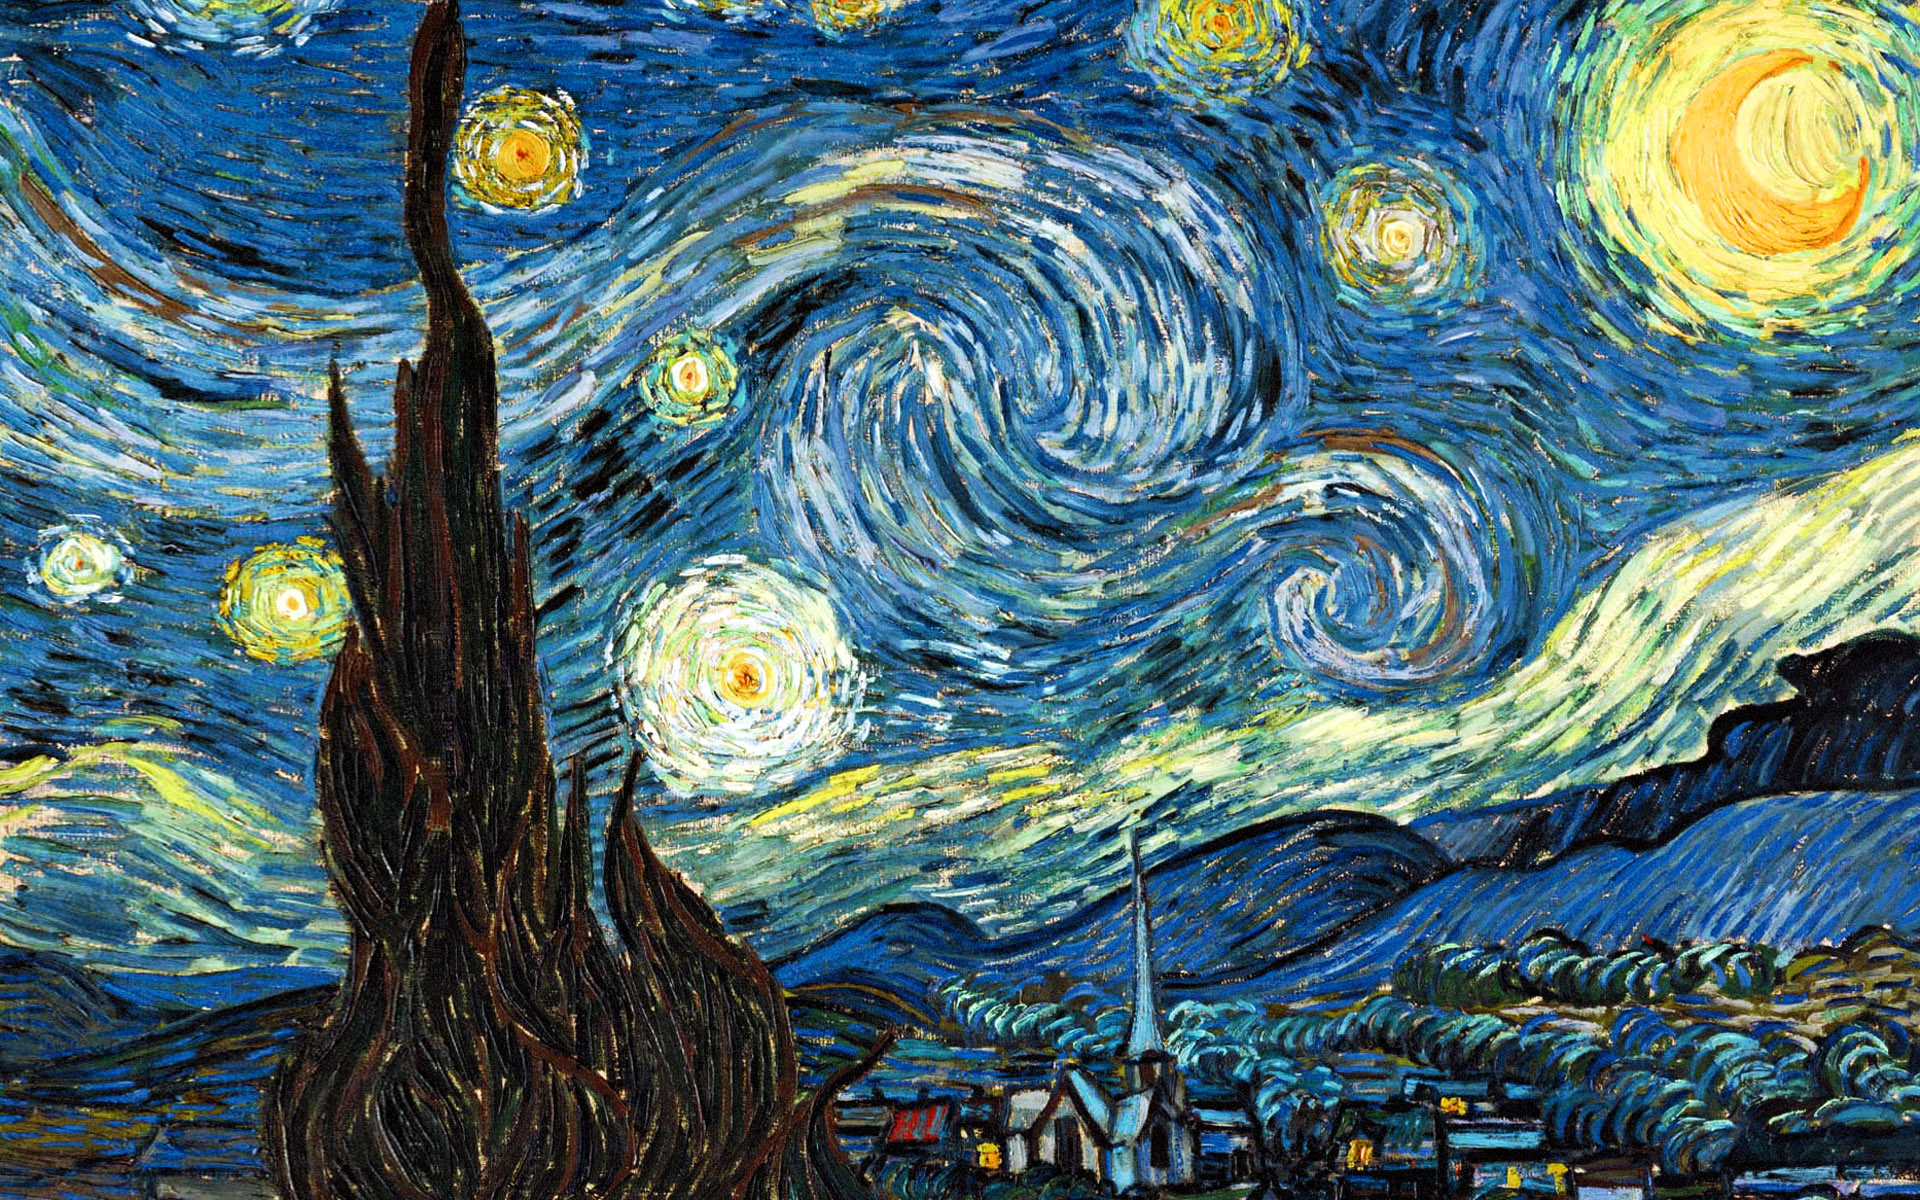 Vincent van Gogh'un ölümünden bir yıl önce 1889 yılının Haziran ayında yaptığı meşhur “Yıldızlı Gece” tablosu 